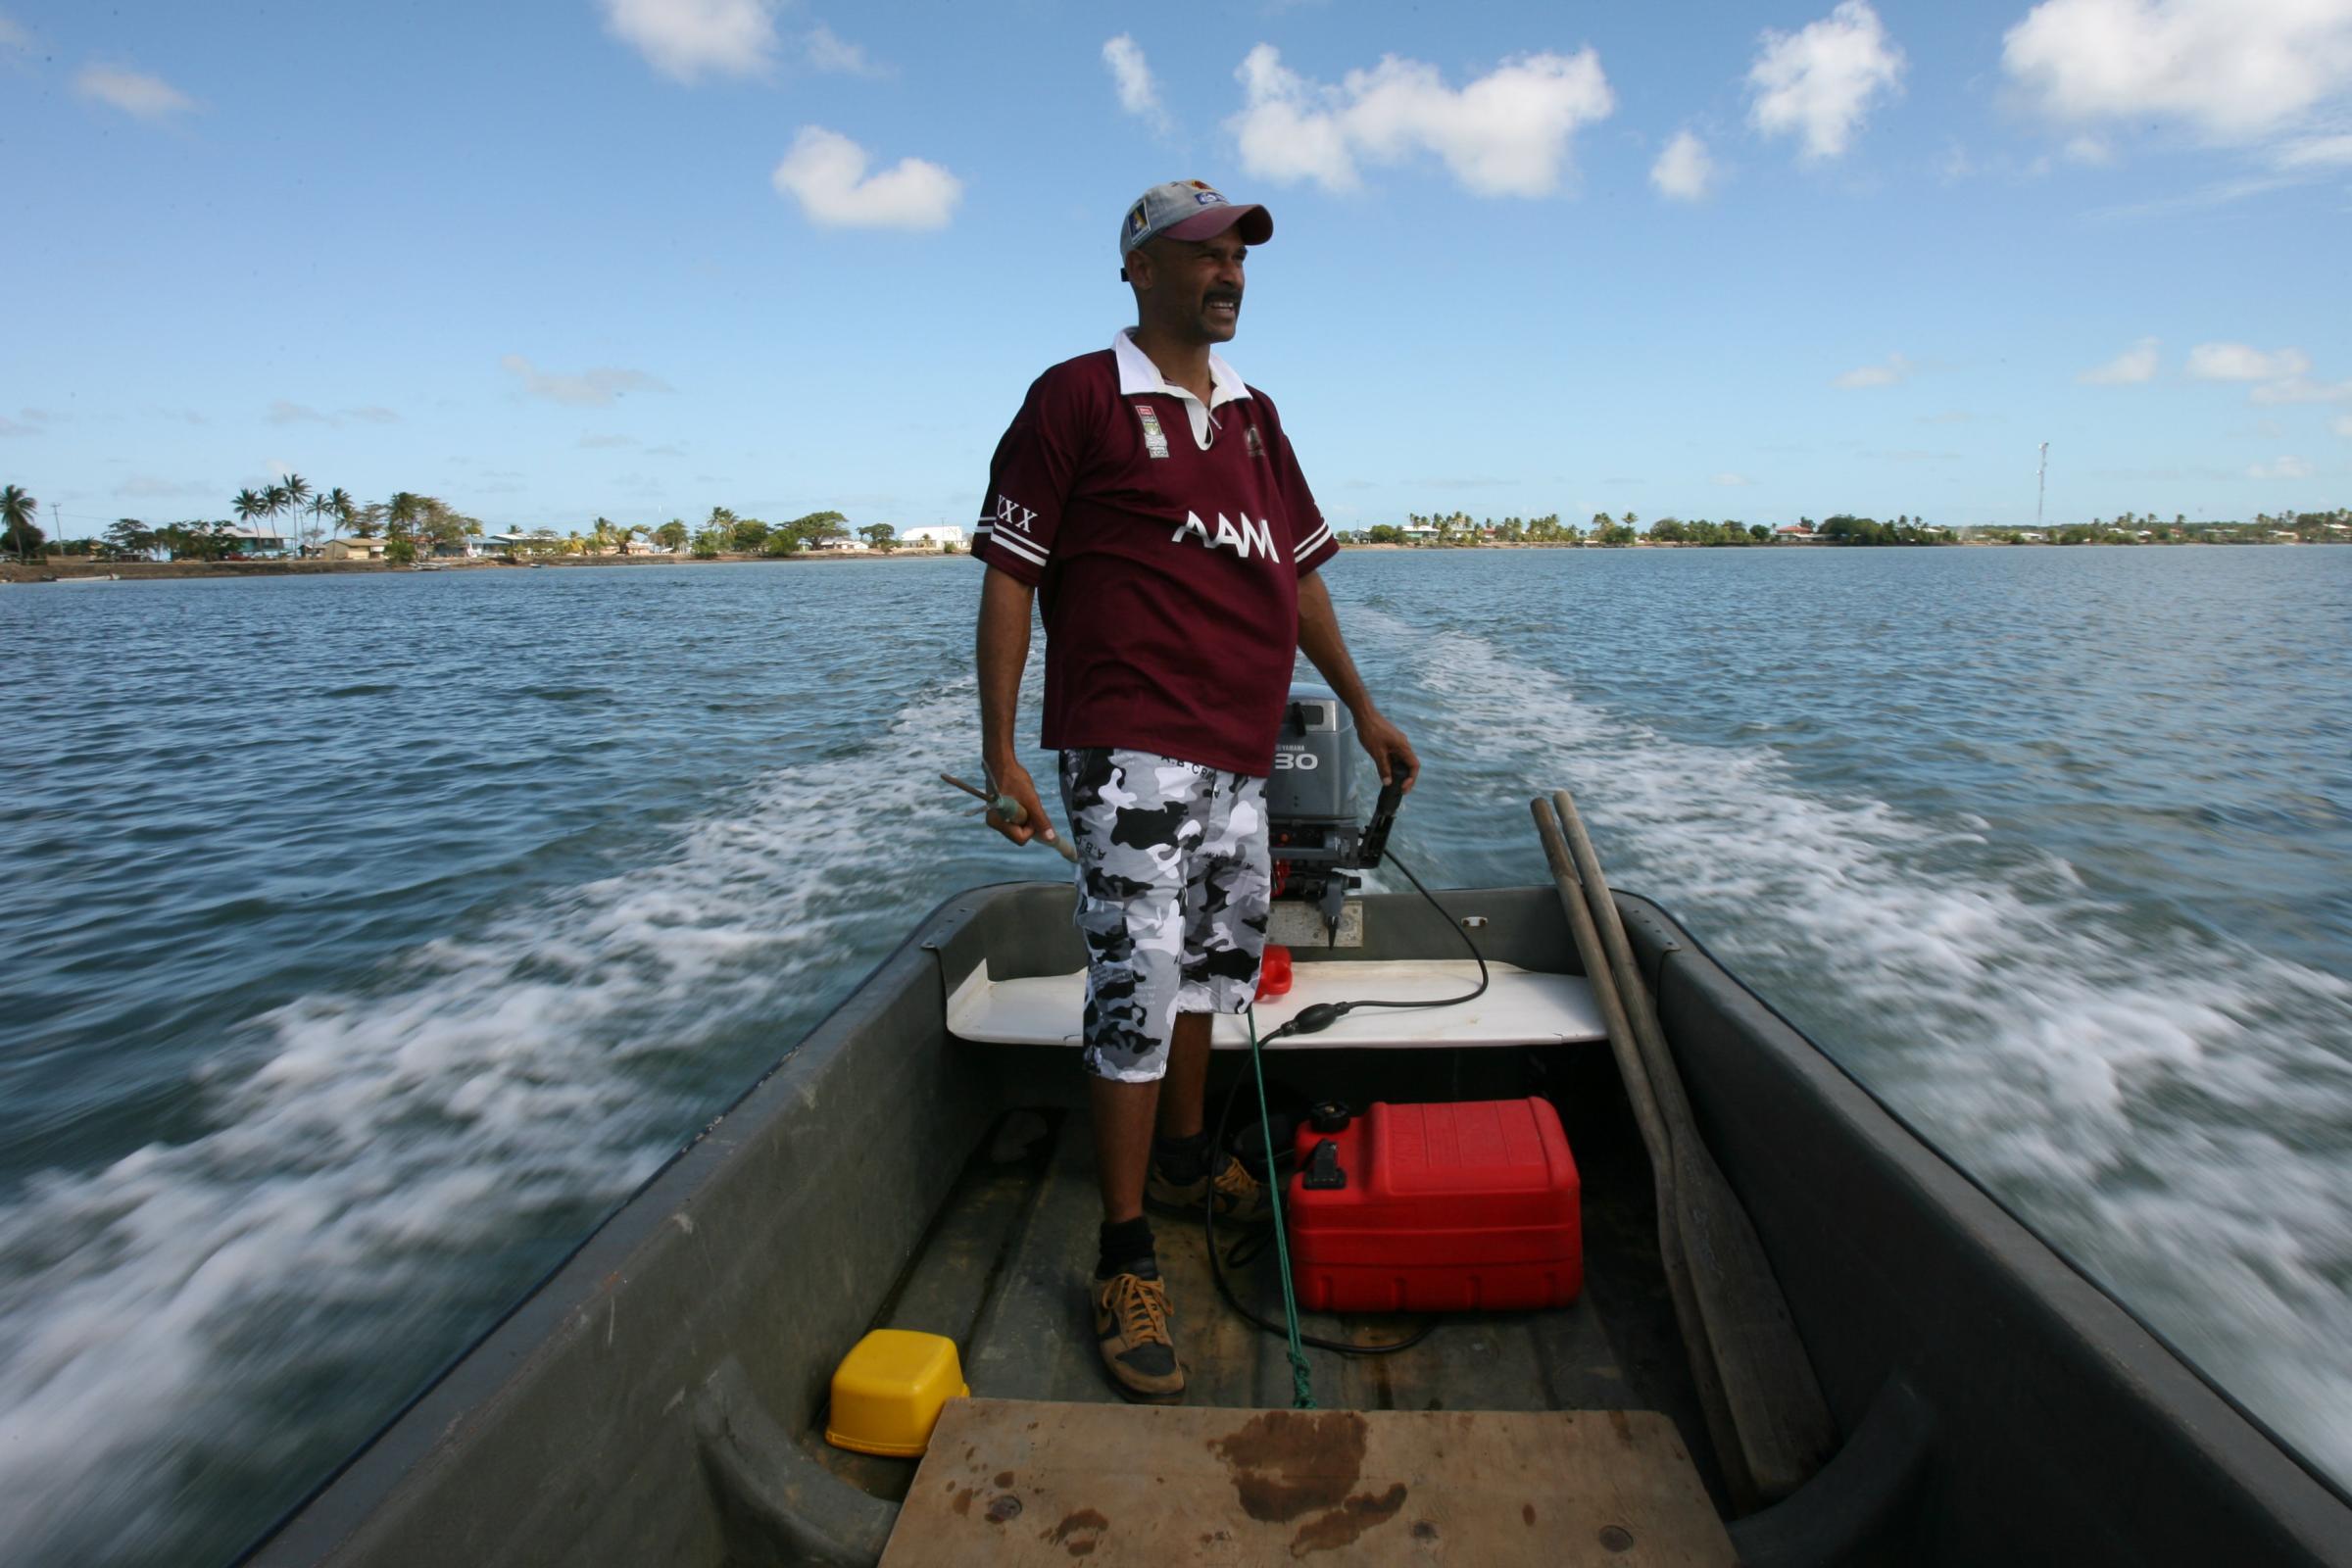 Jensen Warusam, from Saibai Island, on his boat in the Torres Strait